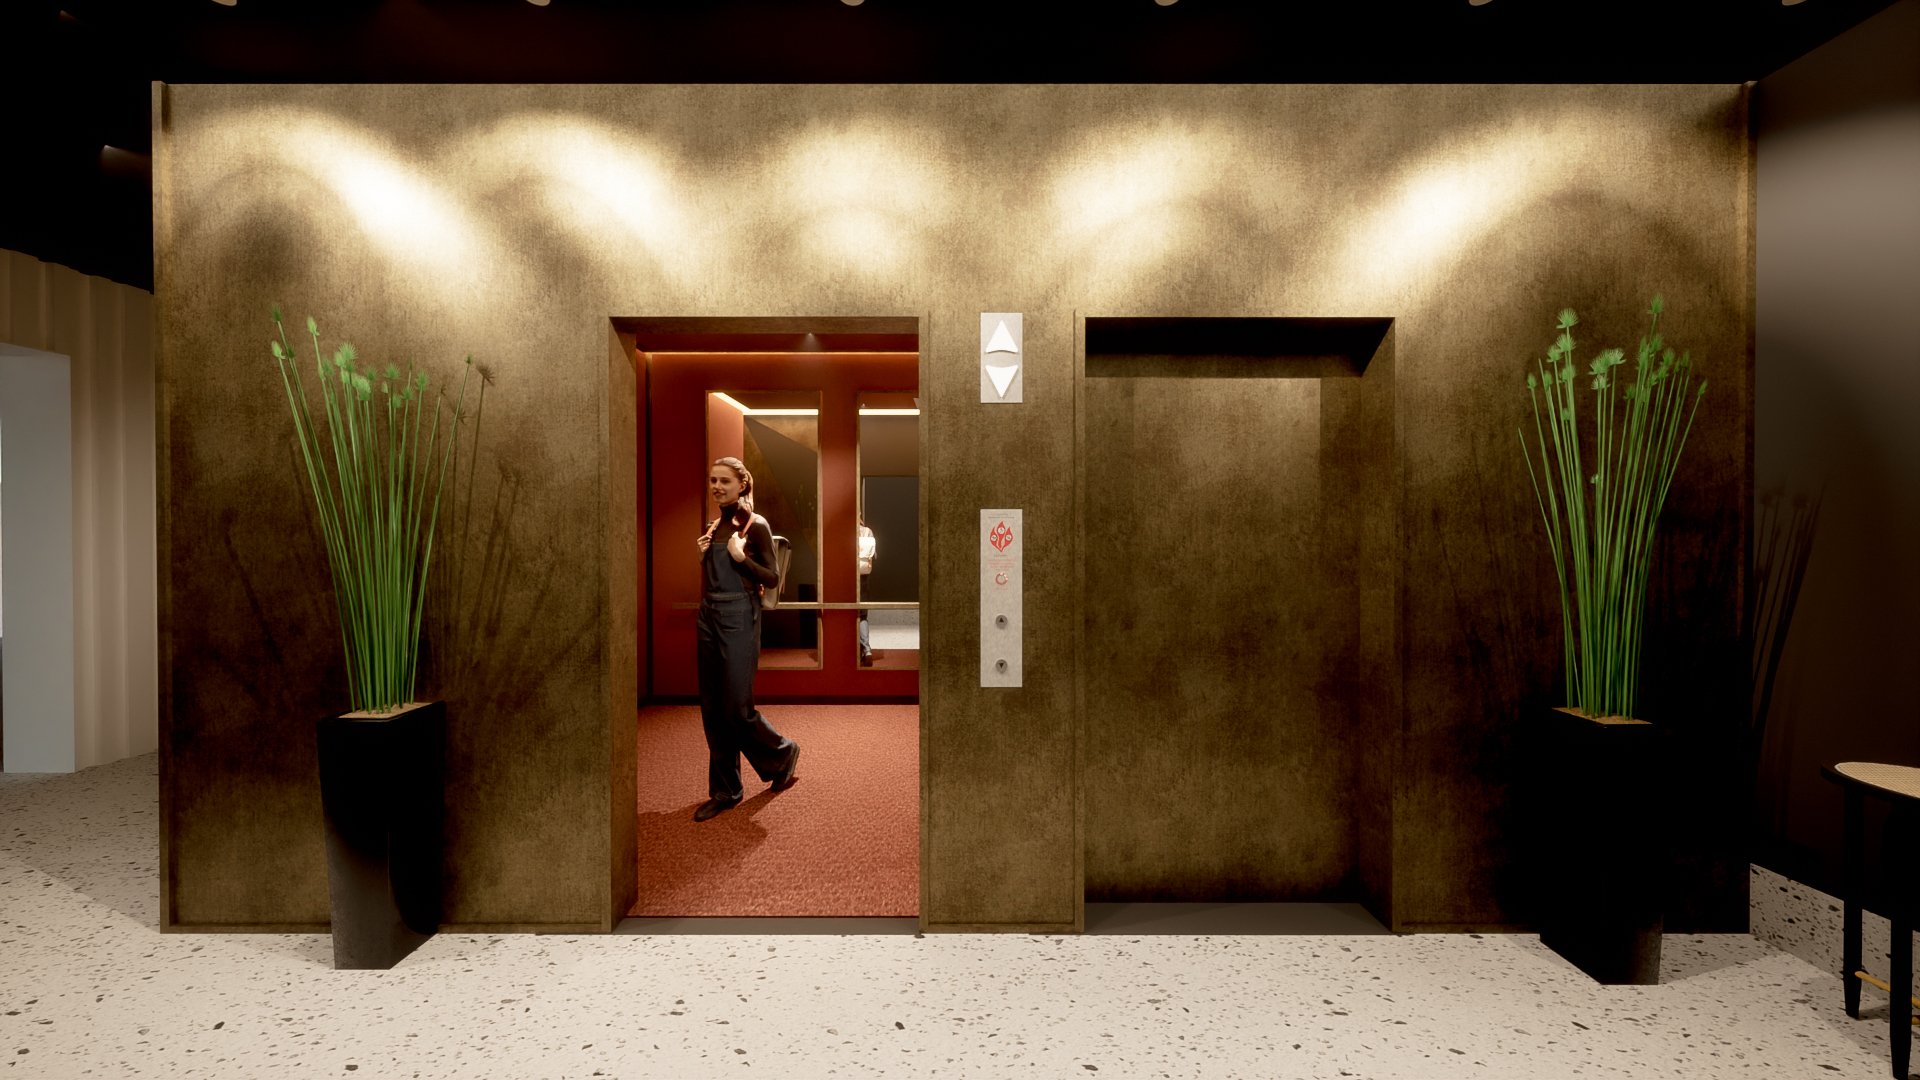 Lobby_elevator vestibule.jpg